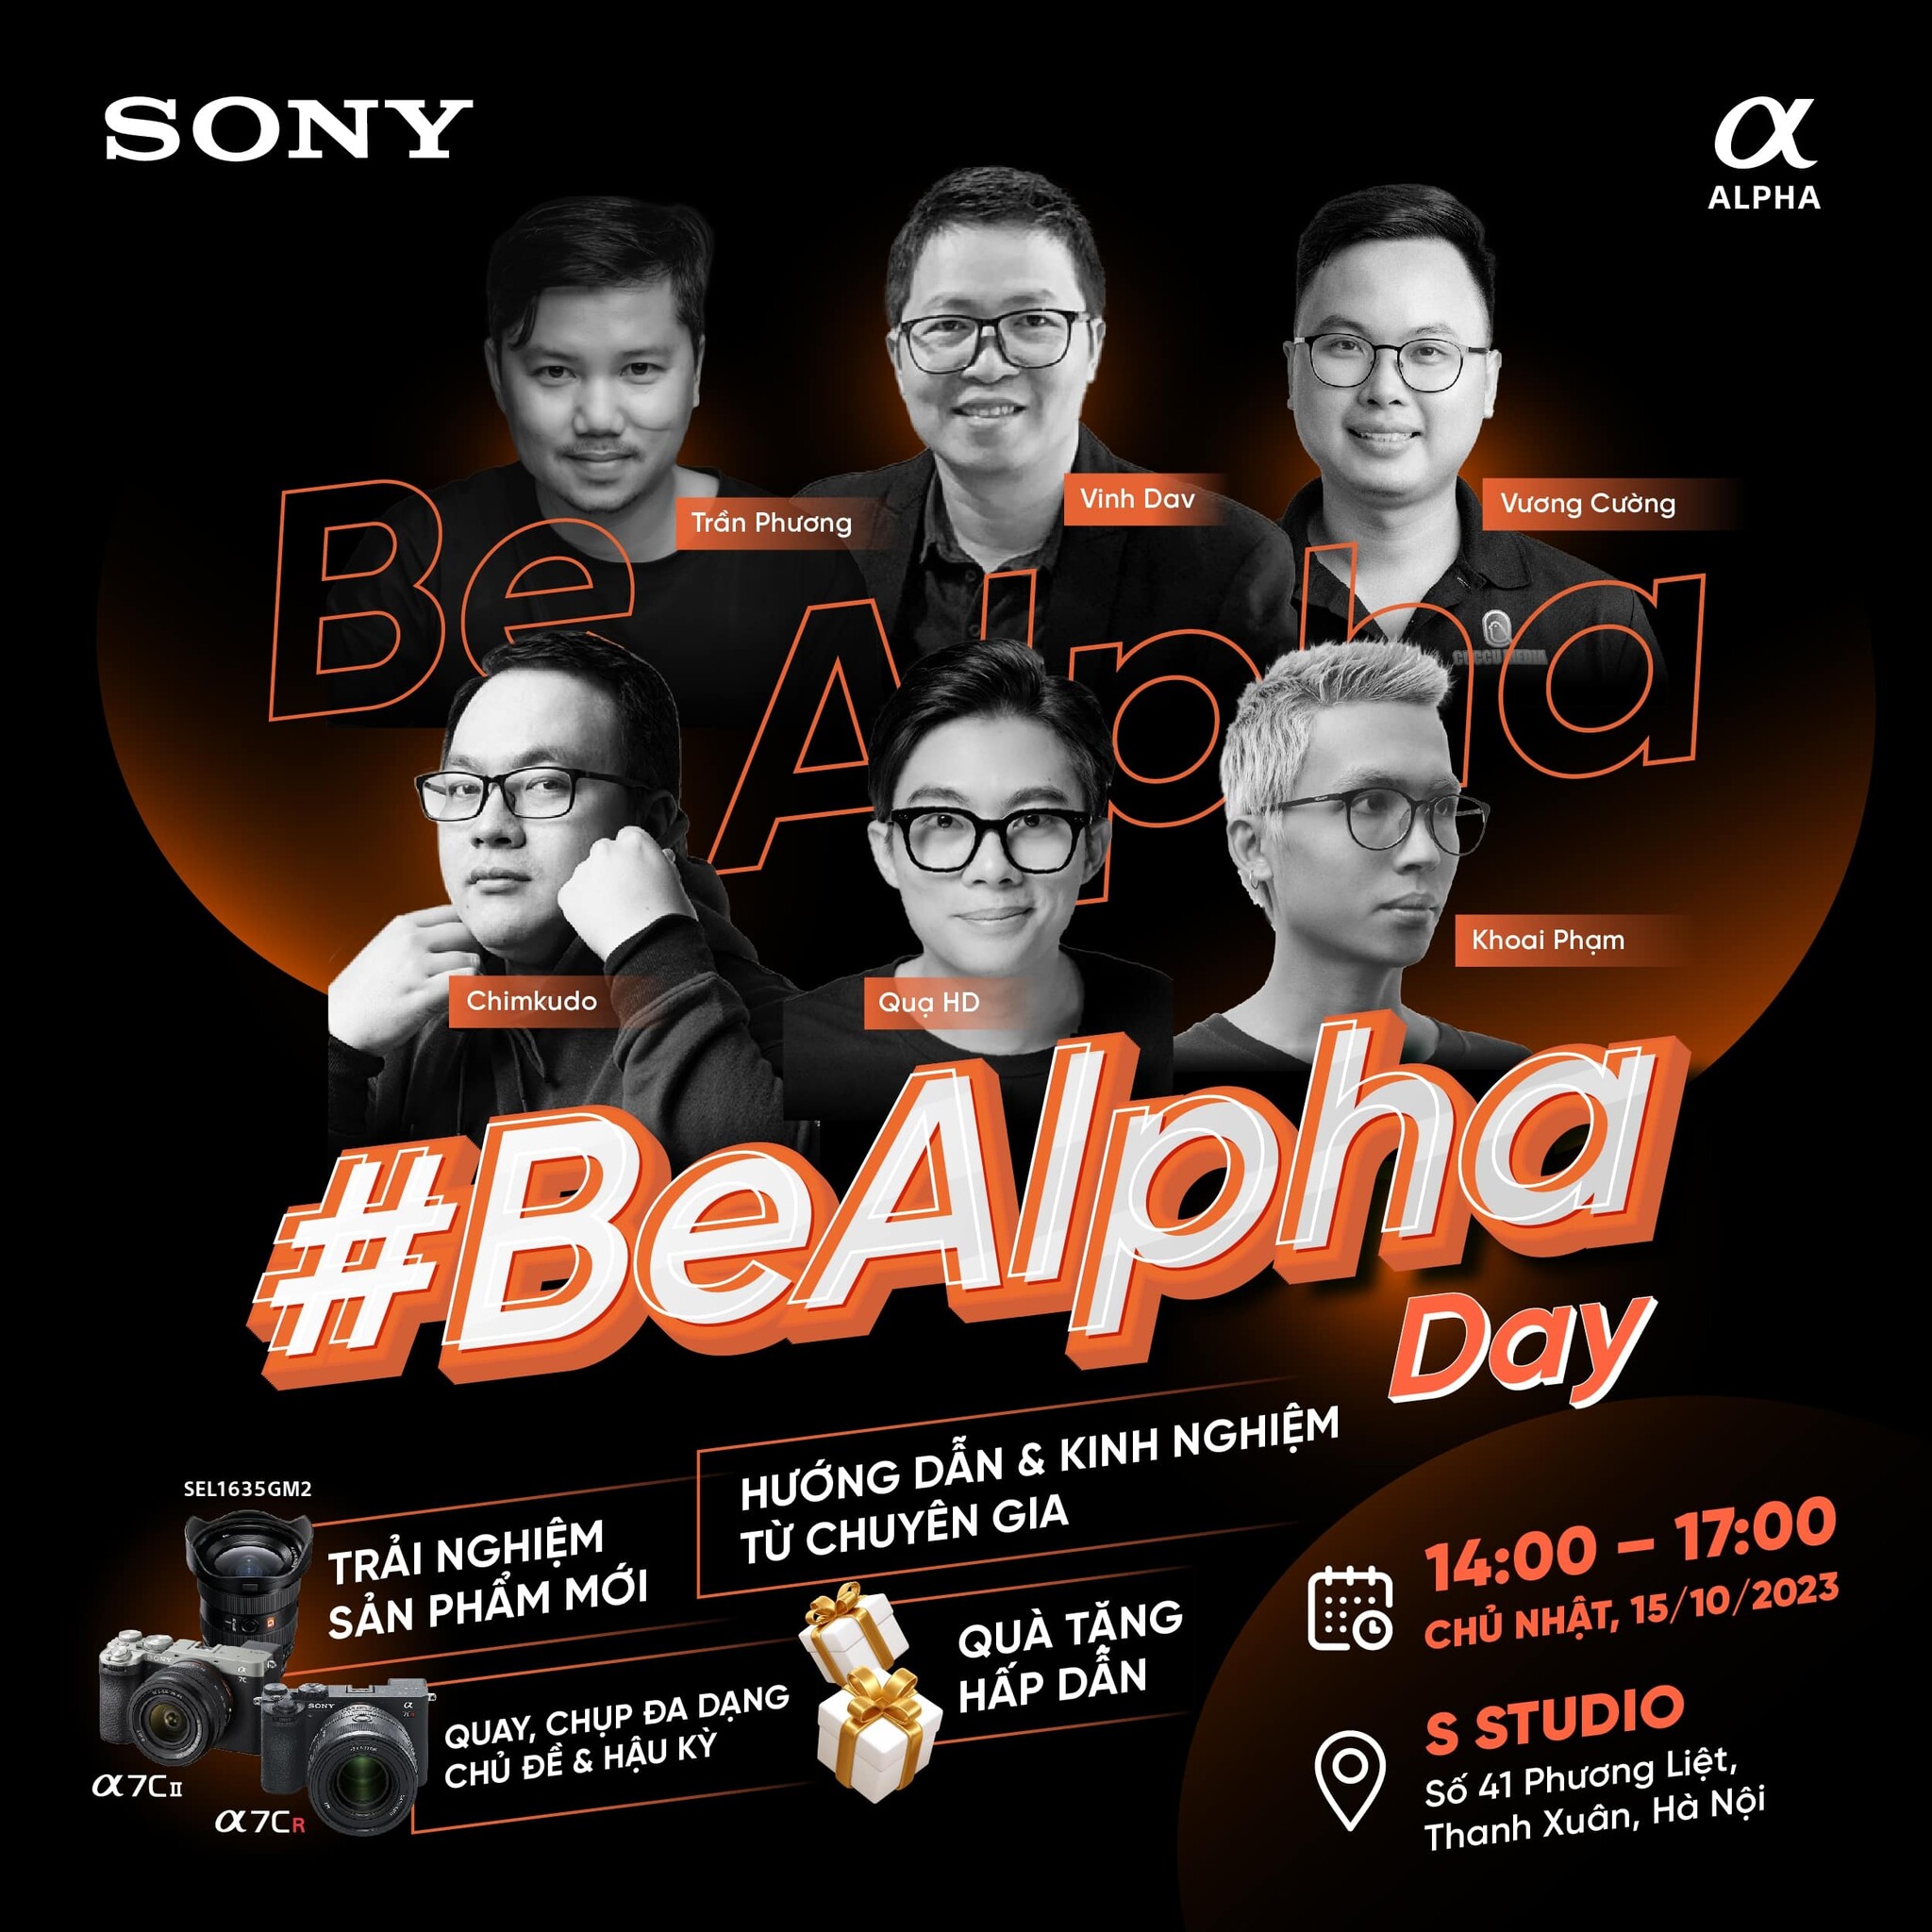 Trải nghiệm Be Alpha Day của hãng Sony tại Hà Nội 2023